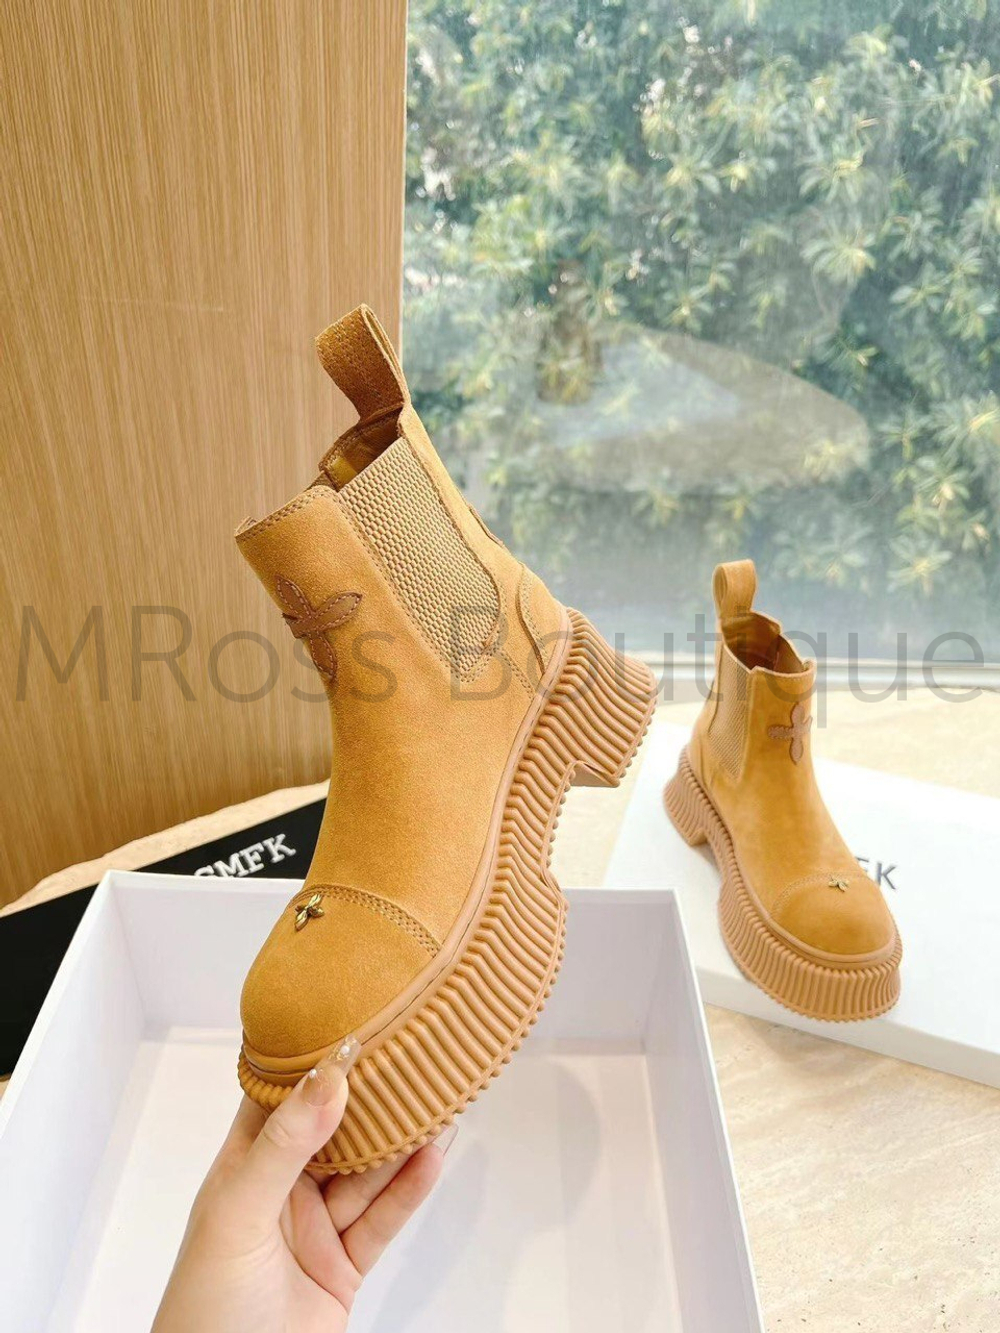 Женские ботинки челси песочного цвета SMFK Compass премиум класса